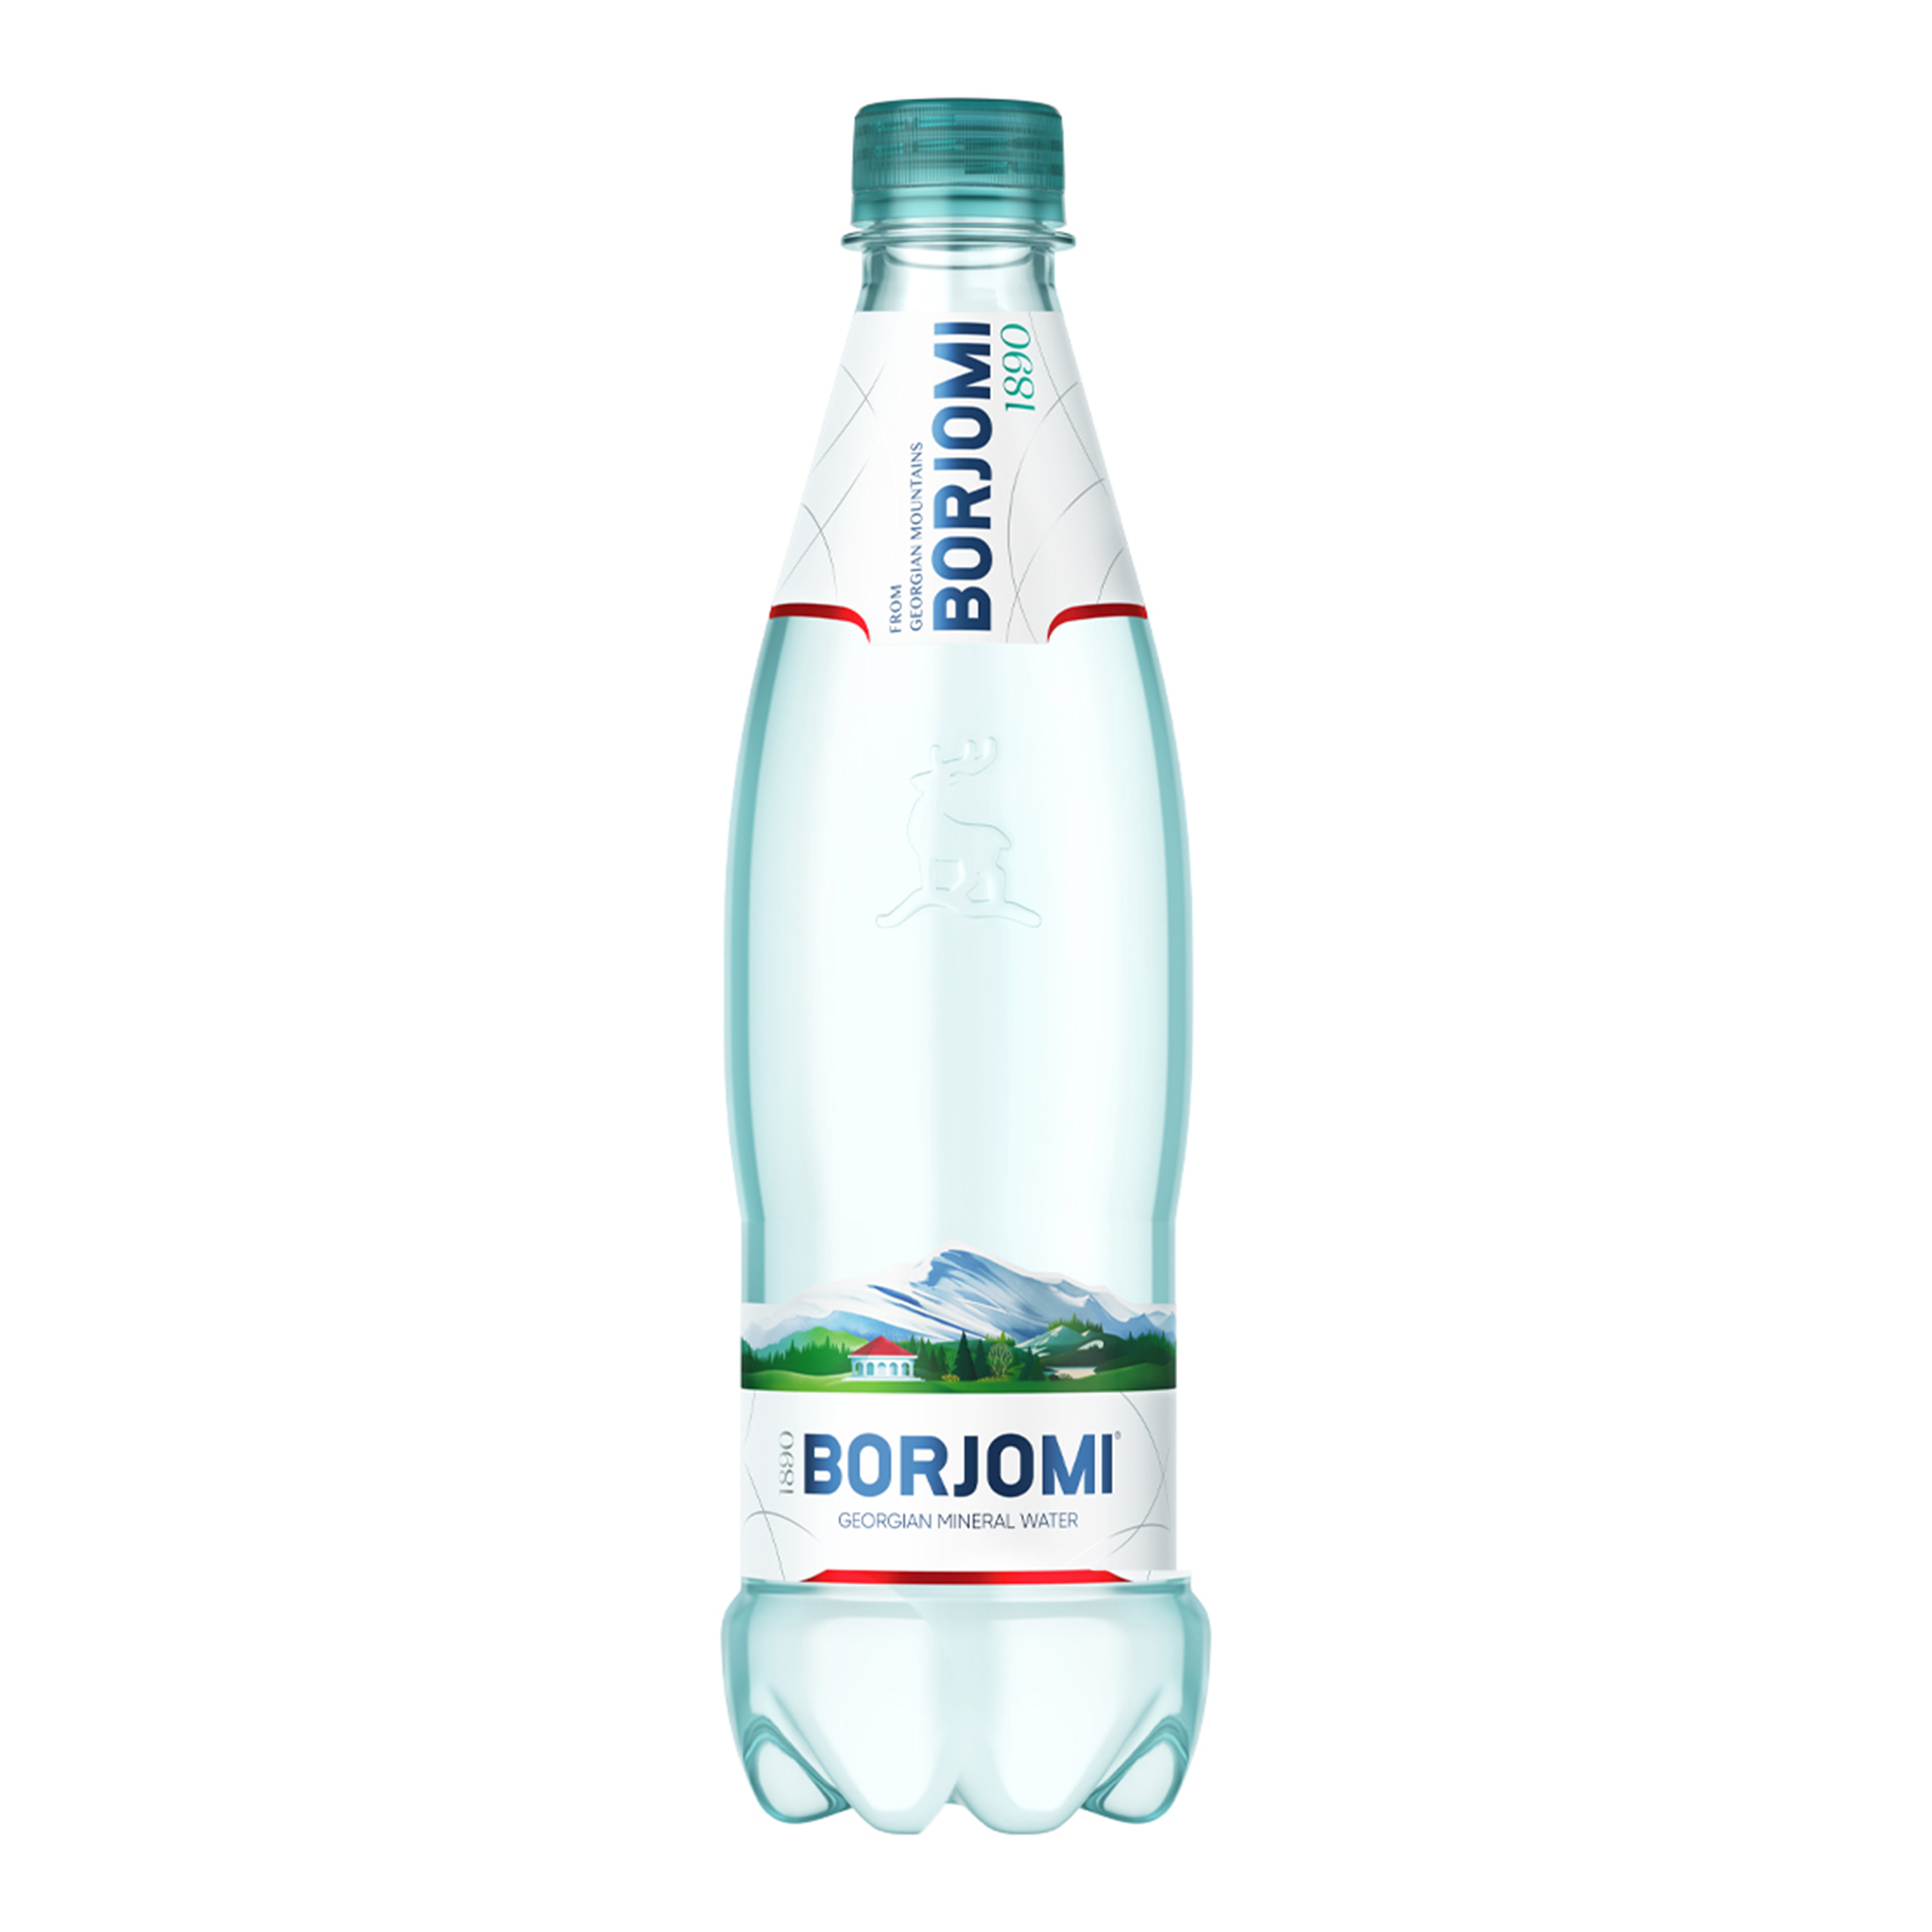 Вода природная минеральная Borjomi, 0,5 л ПЭТ